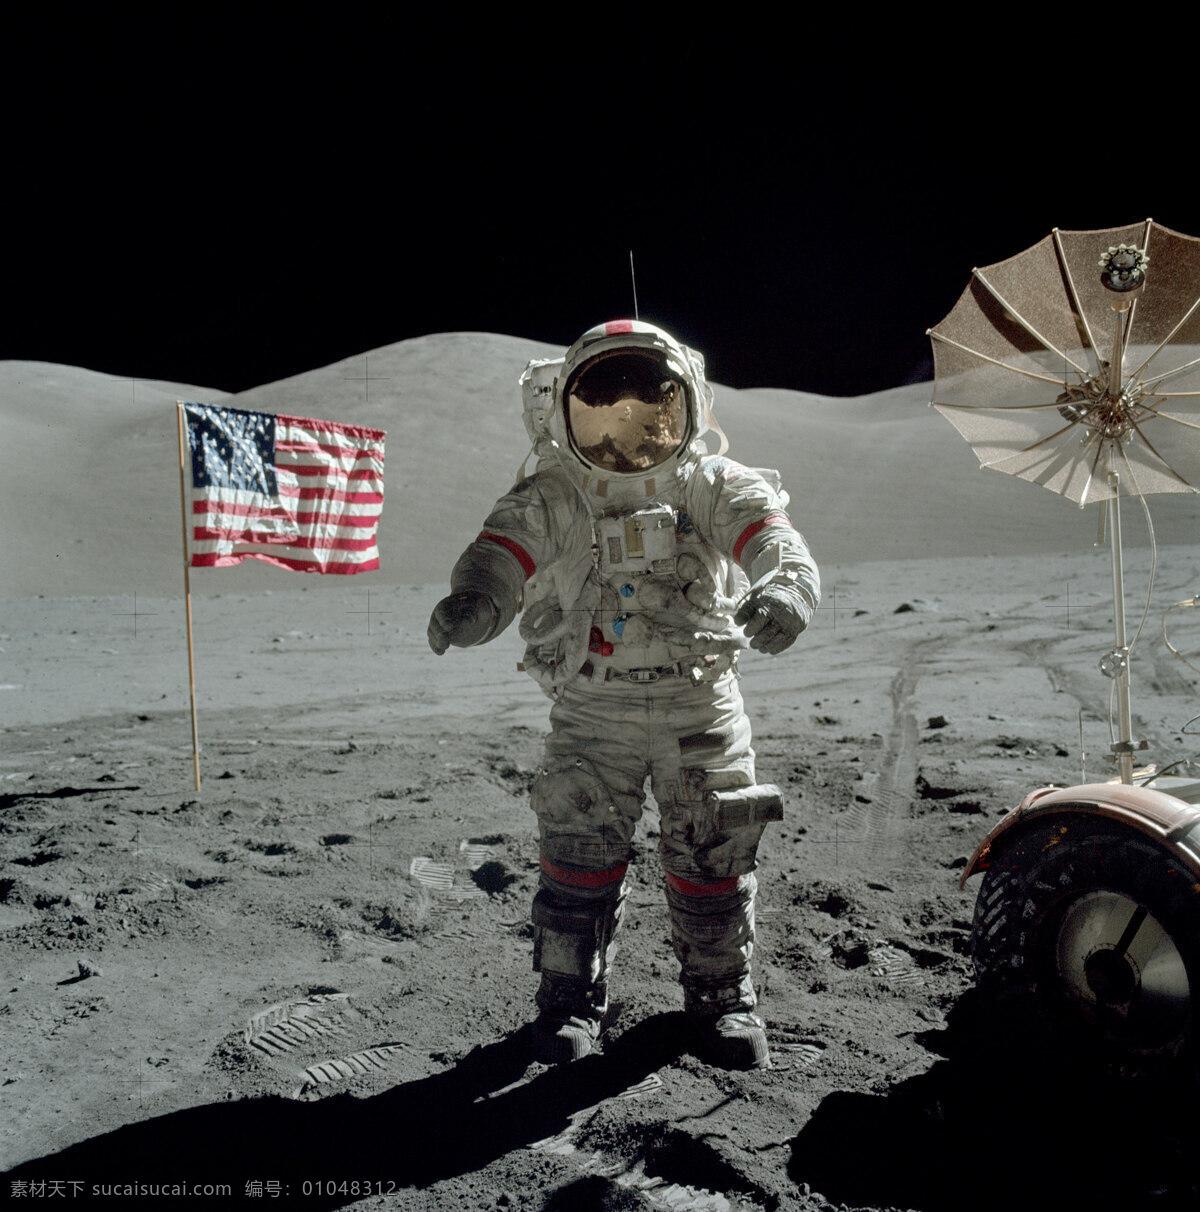 阿波罗 号 飞船 登月 高清 照片 11号 奥尔德林 宇航员 阿姆斯特朗 美国 国旗 月球 月面 太空 科技 航空 航天 现代科技 科学研究 摄影图库